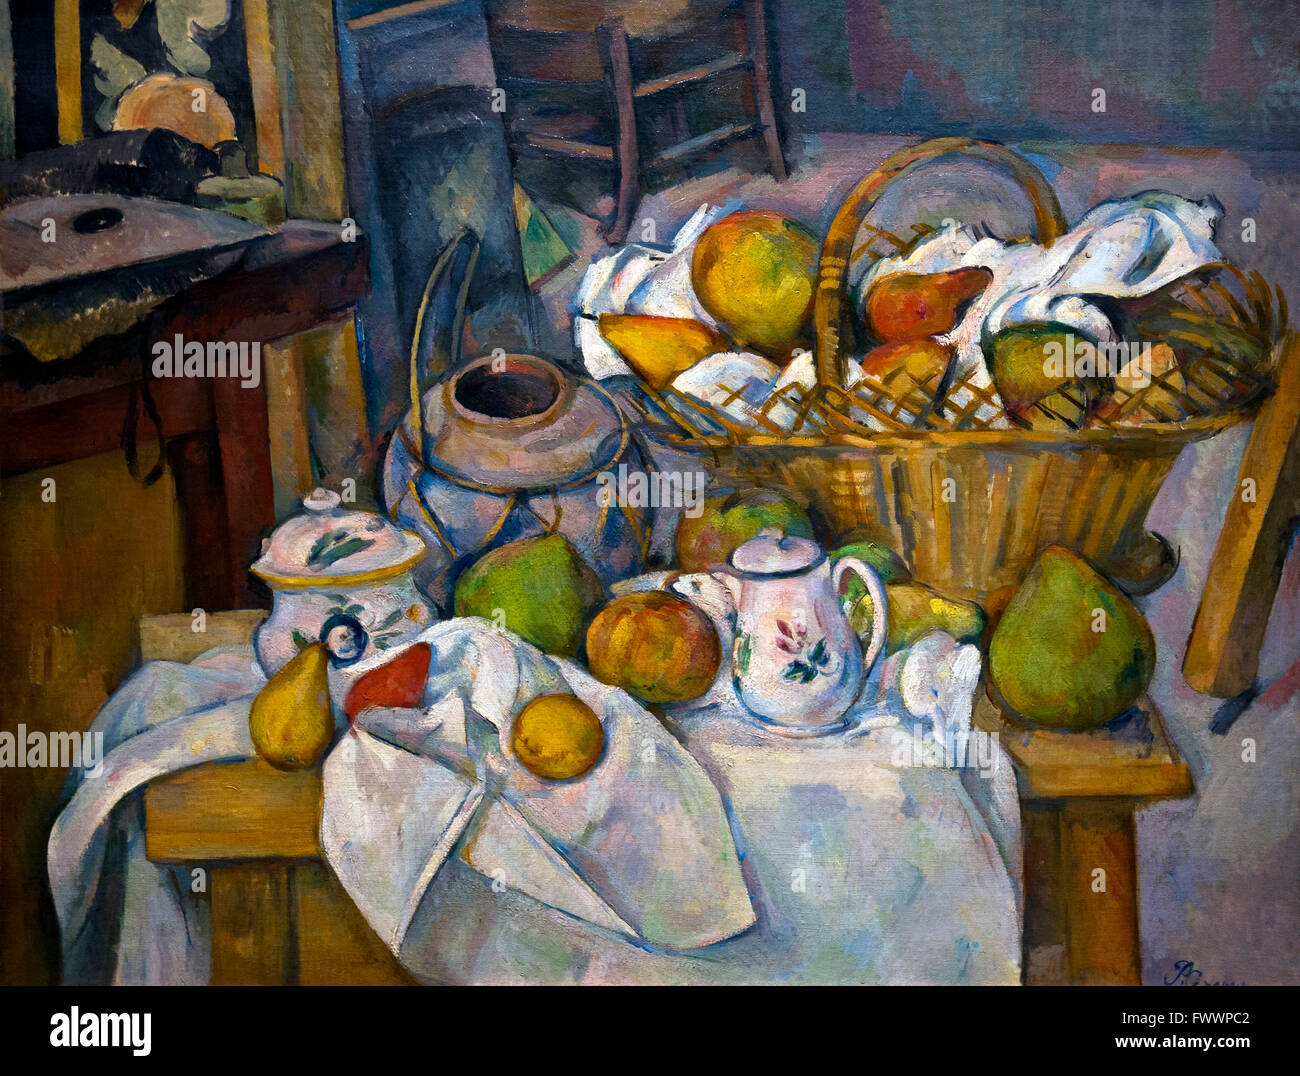 Table de cuisine, la nature morte avec panier, la table de cuisine, Nature morte au panier, 1888-90, par Paul Cézanne, Musée d'Orsay, Banque D'Images